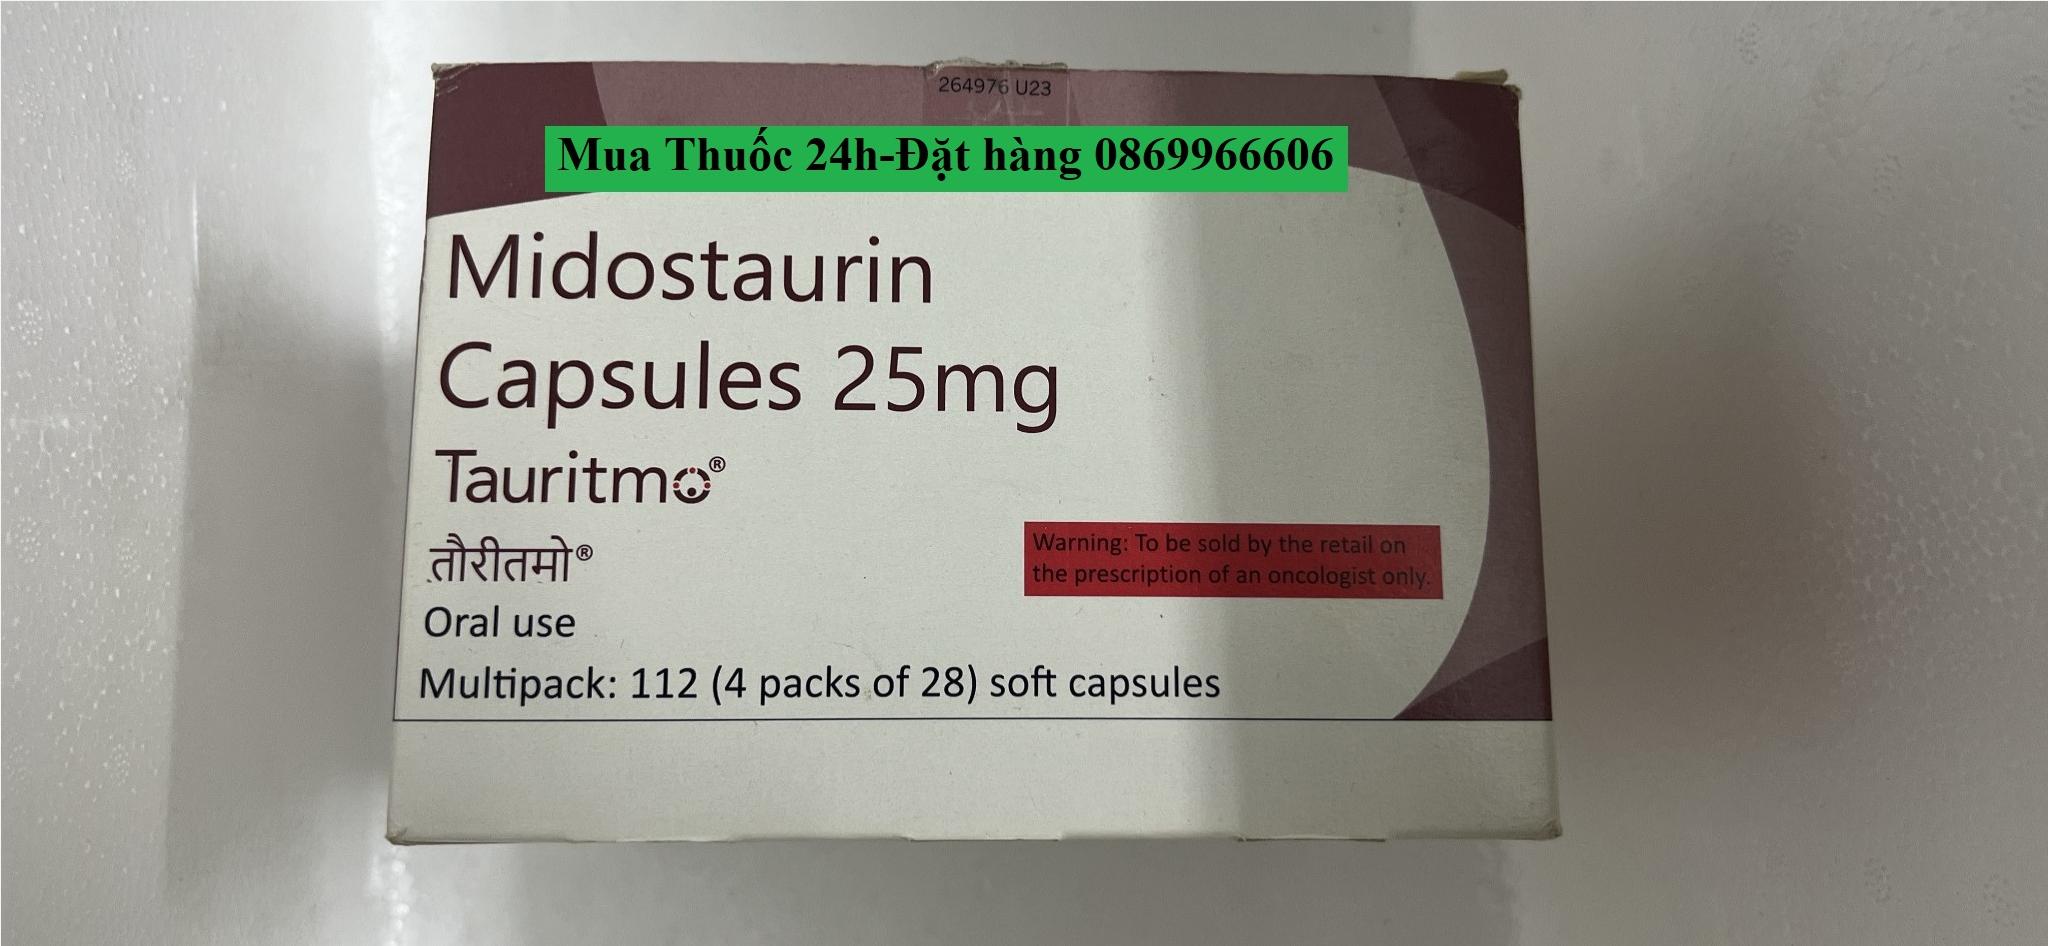 Thuốc Tauritmo Midostaurin 25mg giá bao nhiêu mua ở đâu?